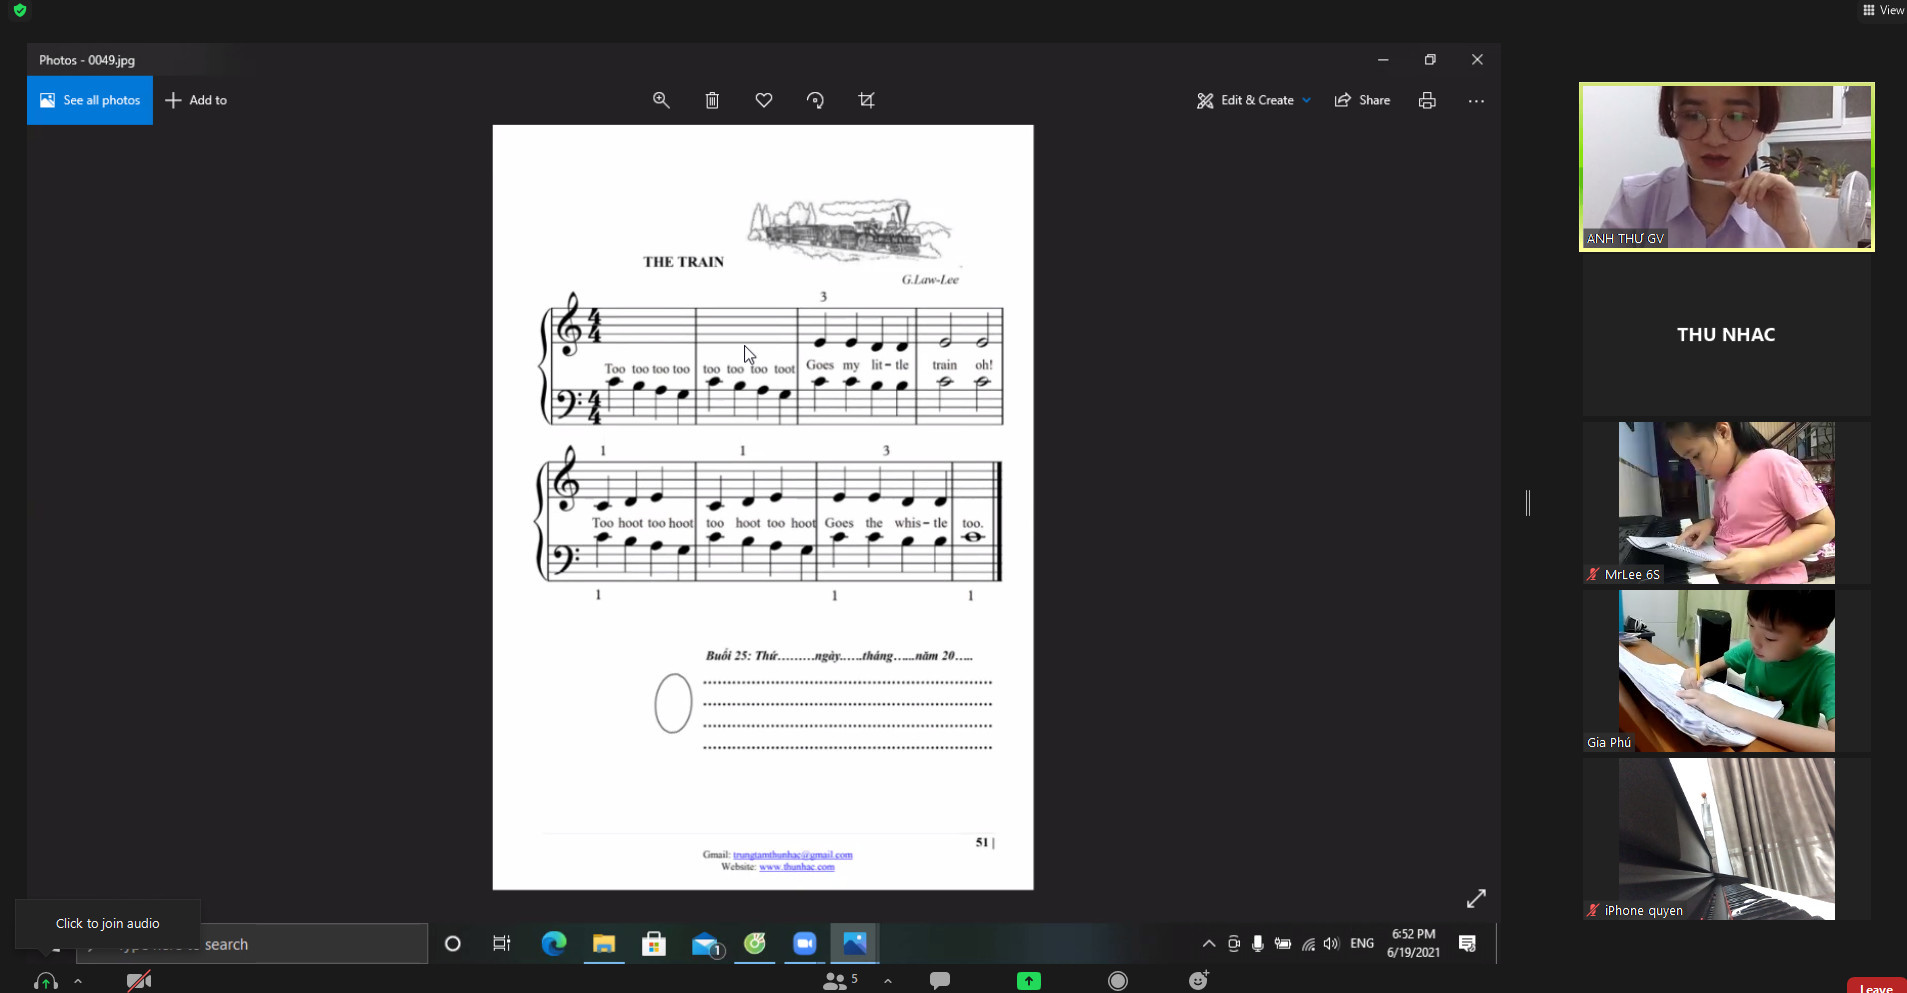 Giáo viên dạy Piano online kinh nghiệm